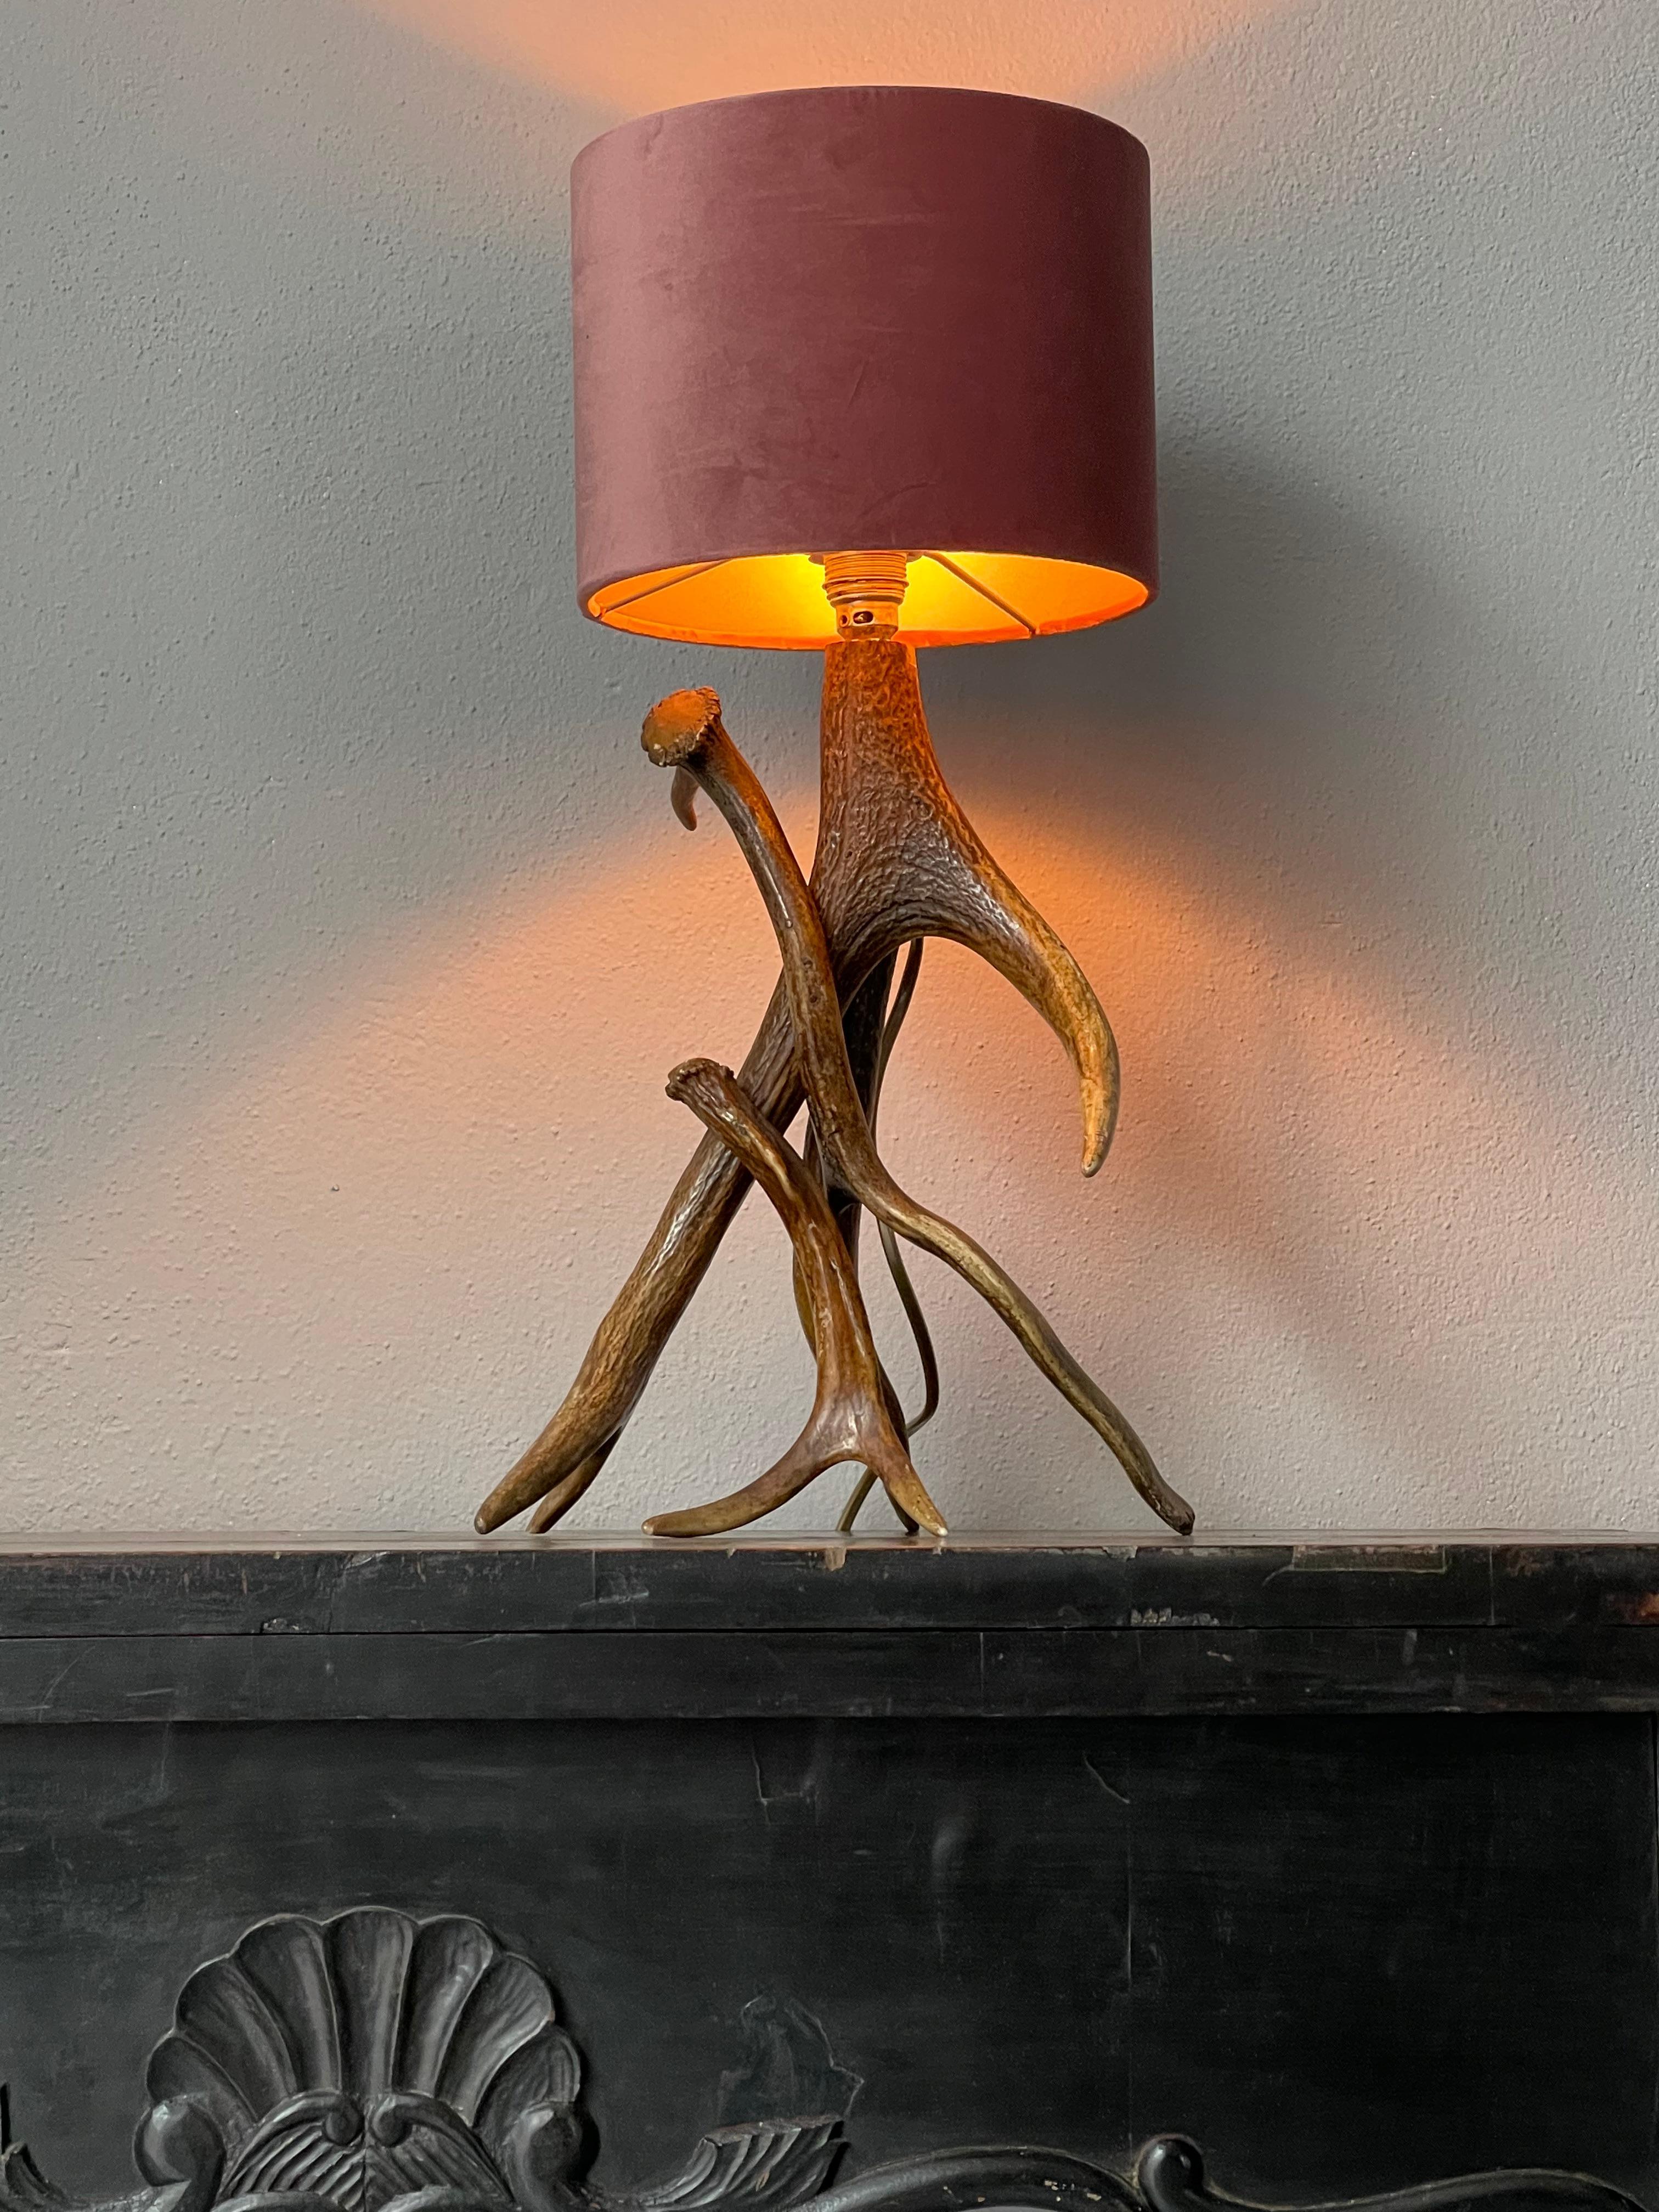 Lamp with velvet Shade.